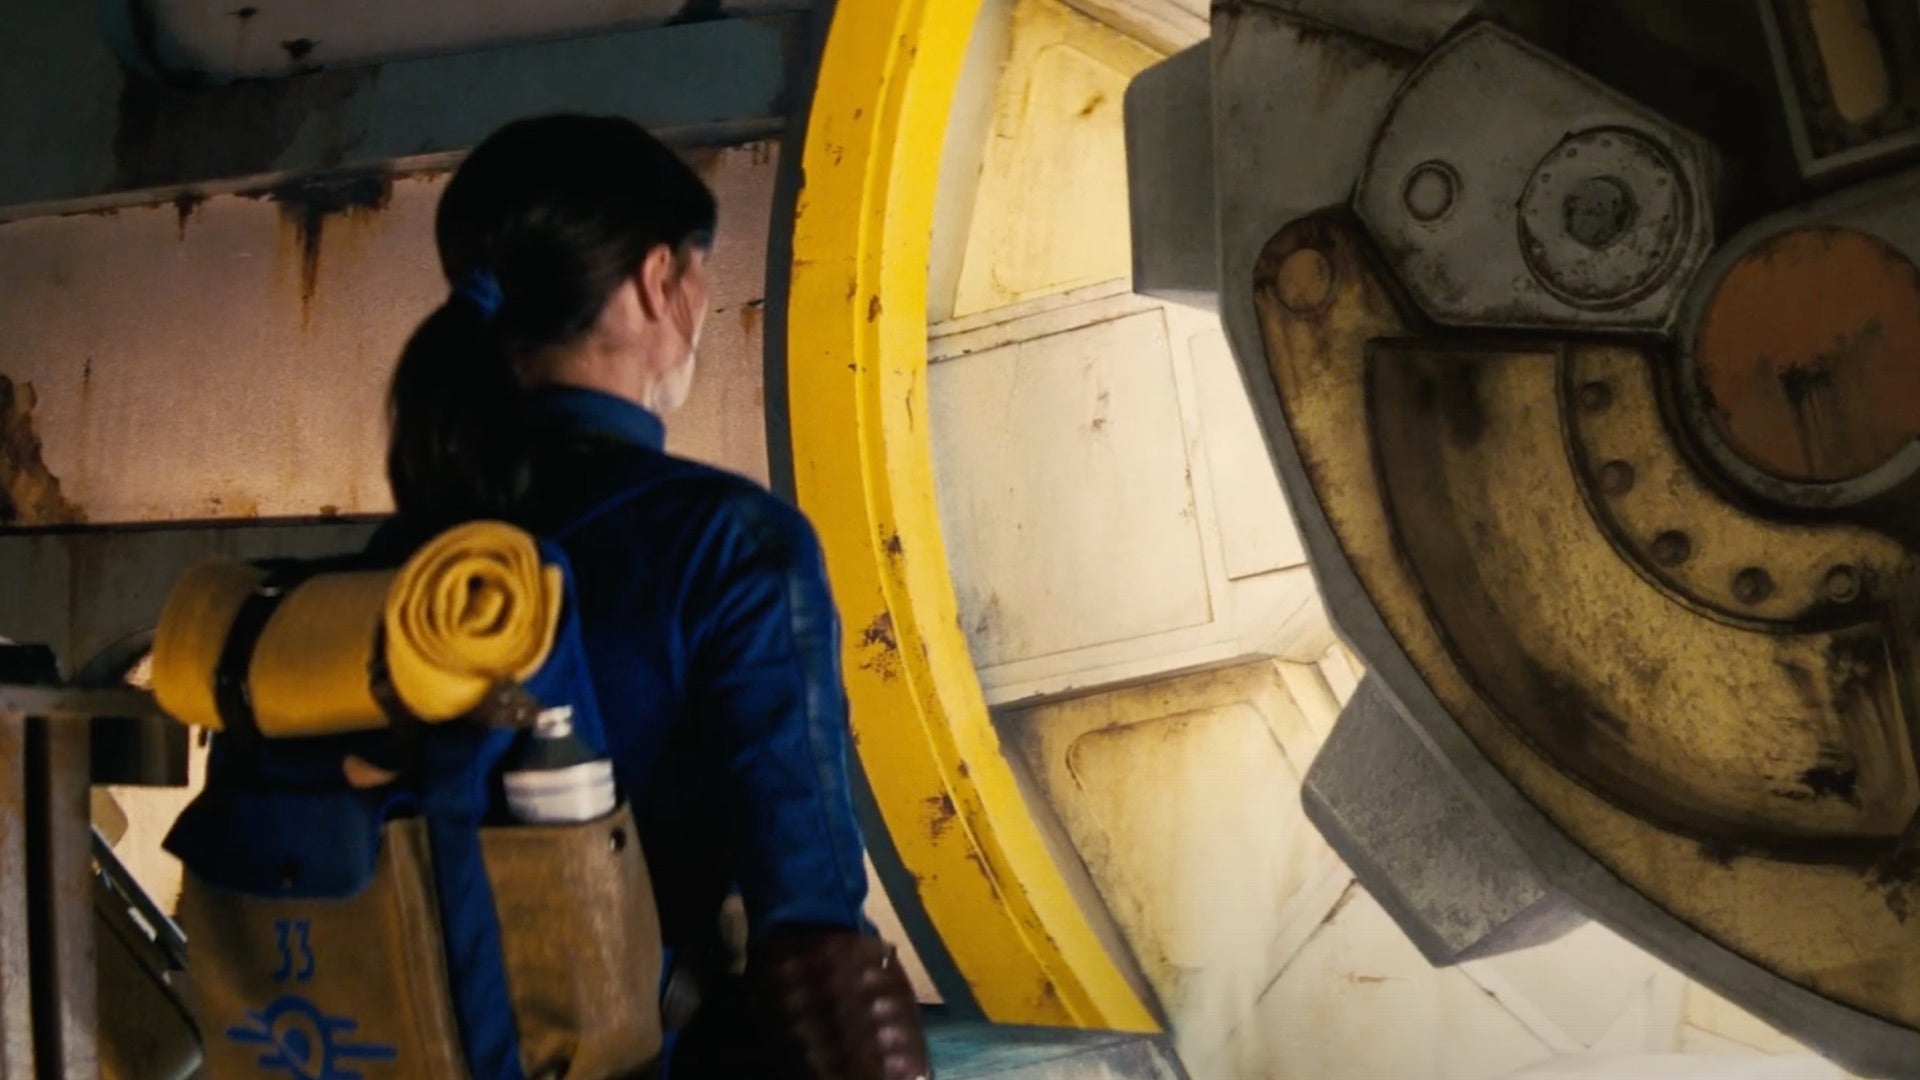 Un'immagine dal trailer della serie TV di Fallout che mostra un Vault Dweller, interpretato da Ella Purnell, che aspetta mentre si apre una porta del Vault.